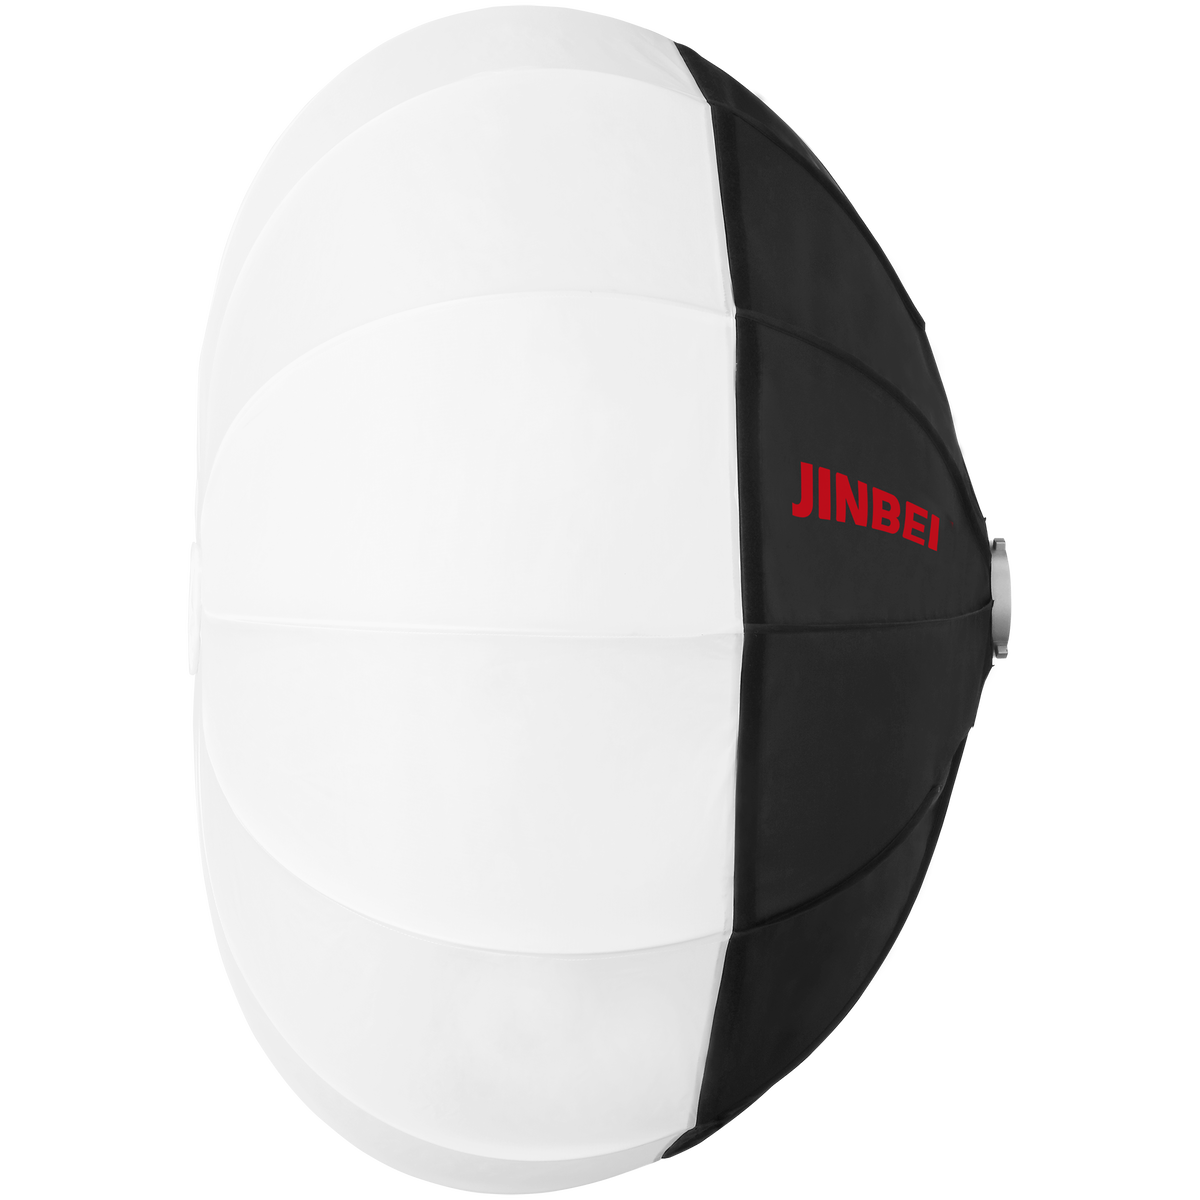 Quick Ball Softbox | 100 oder 120 cm | mit Lichtkontrollvorhang